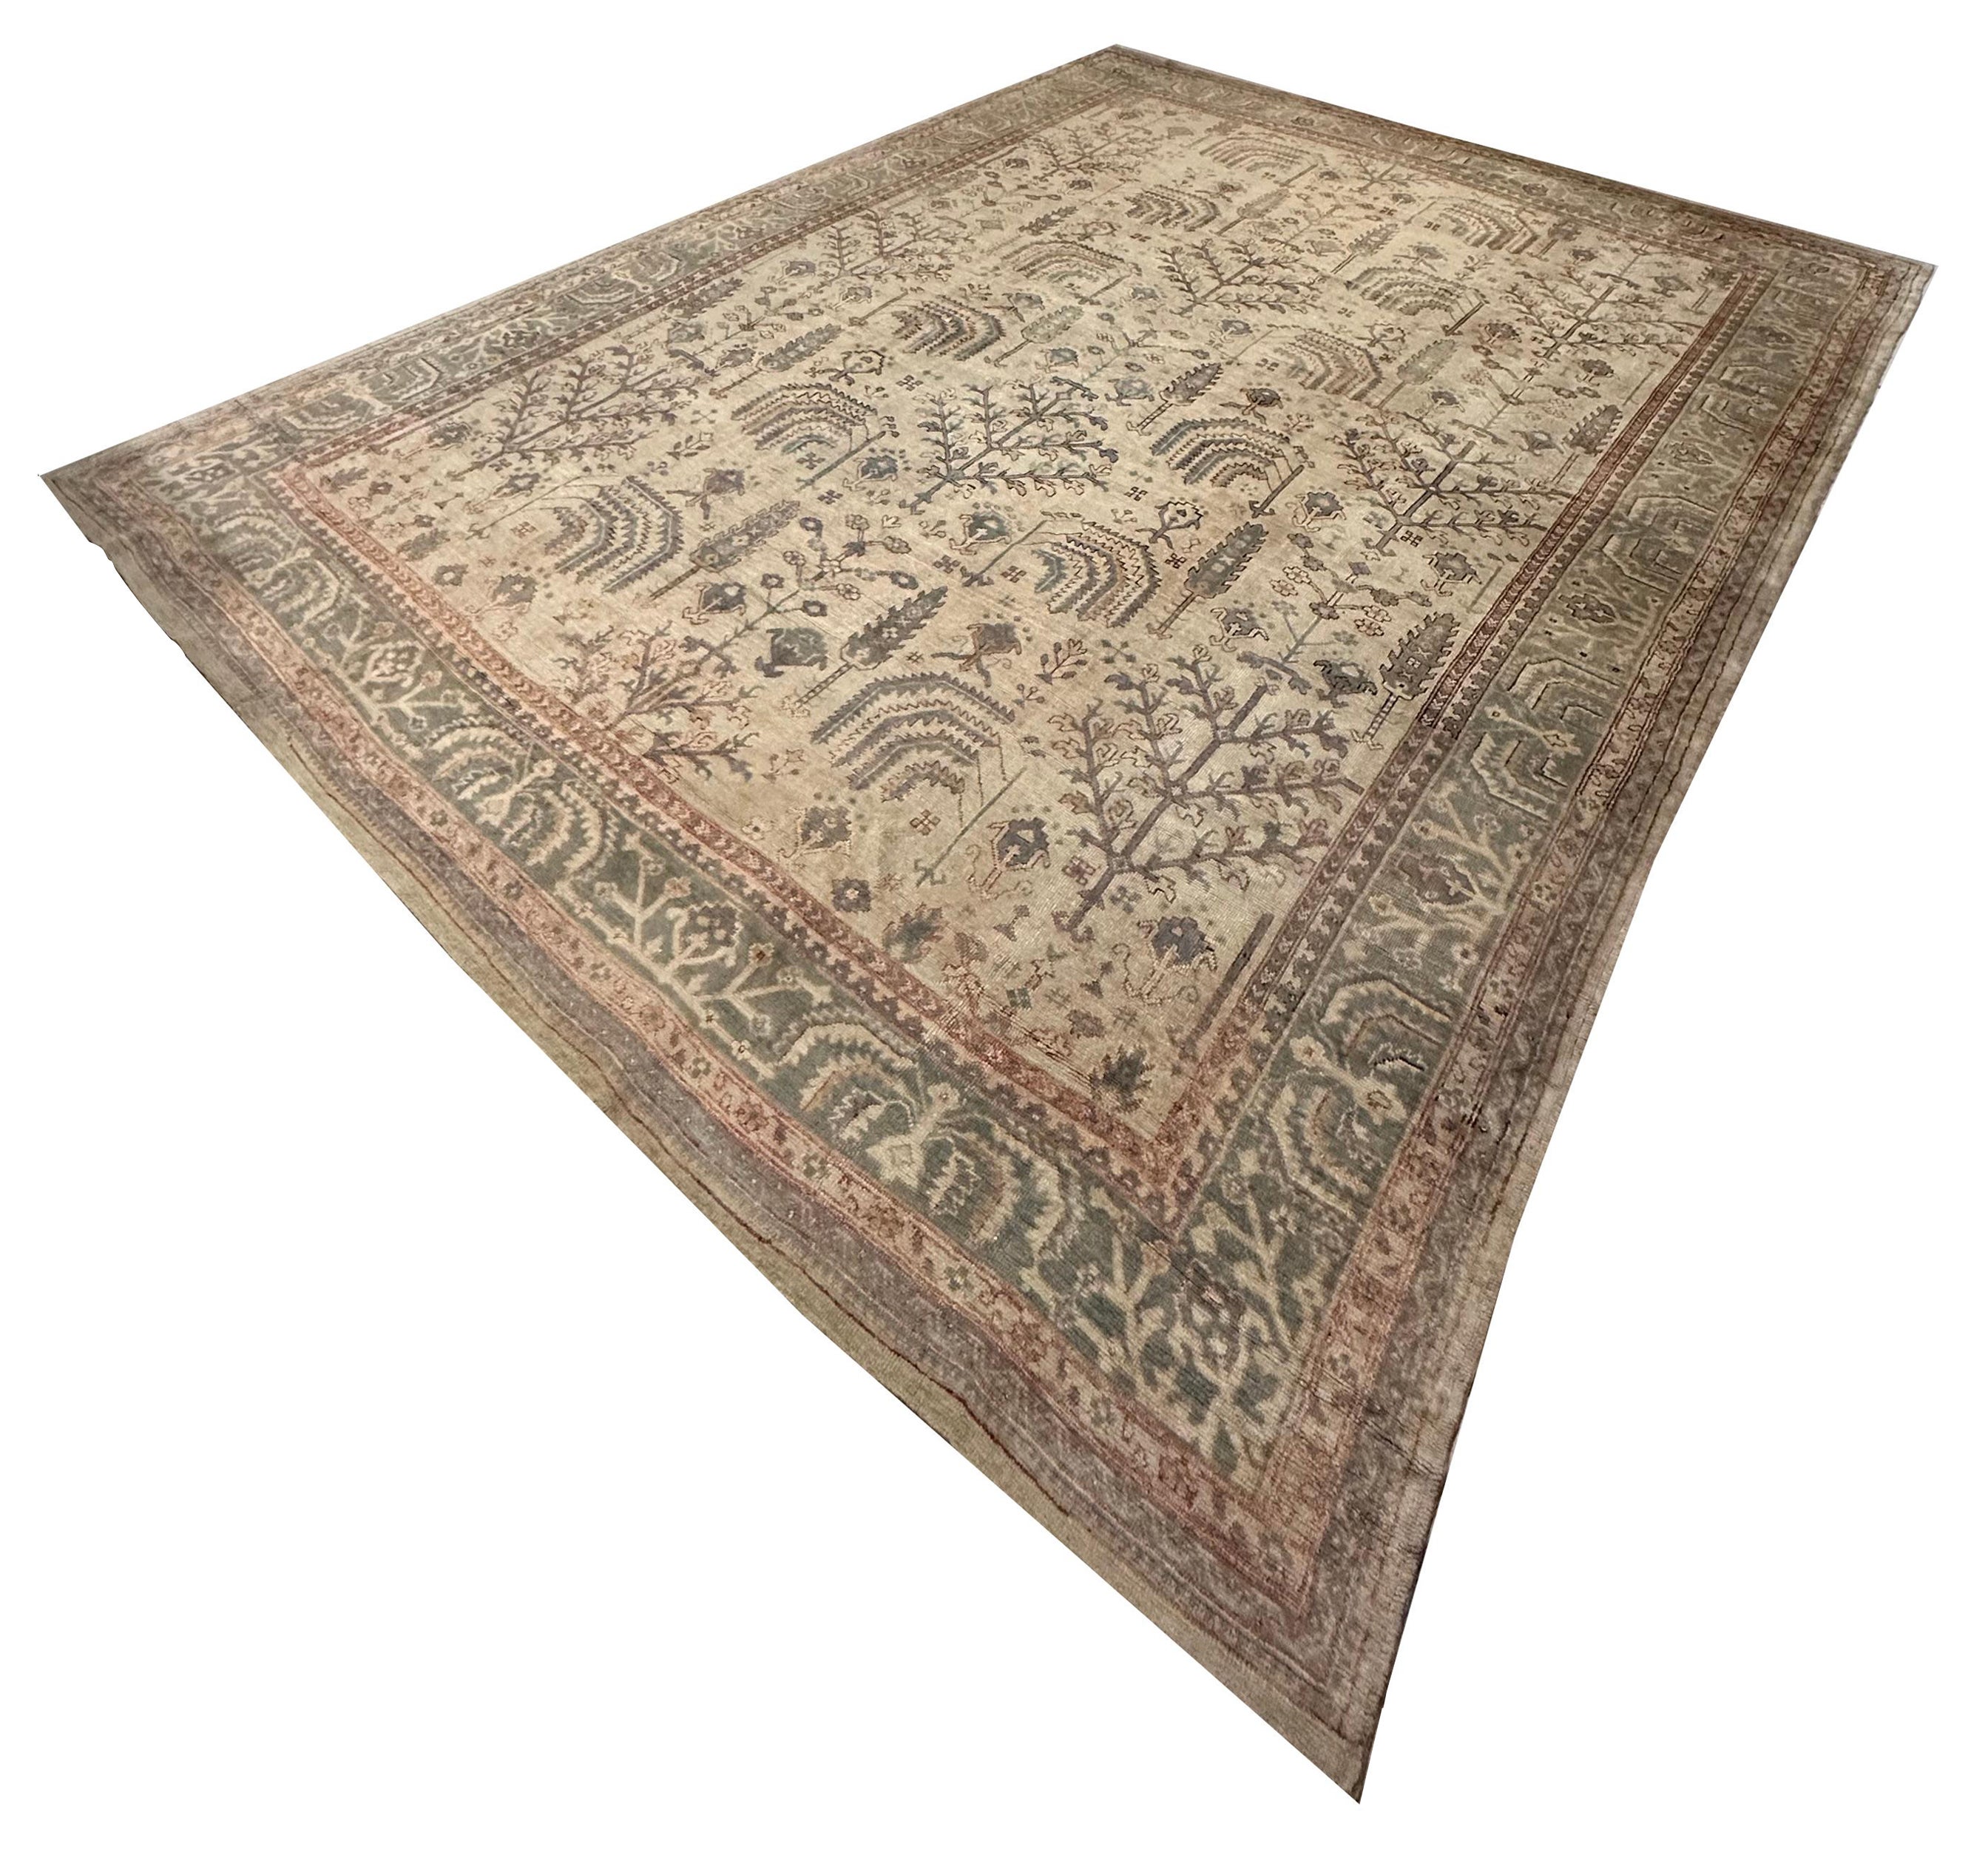 Antiker Oushak-Teppich, handgefertigter orientalischer Teppich in weichem Taupe, Grün, Beige, Blassblau